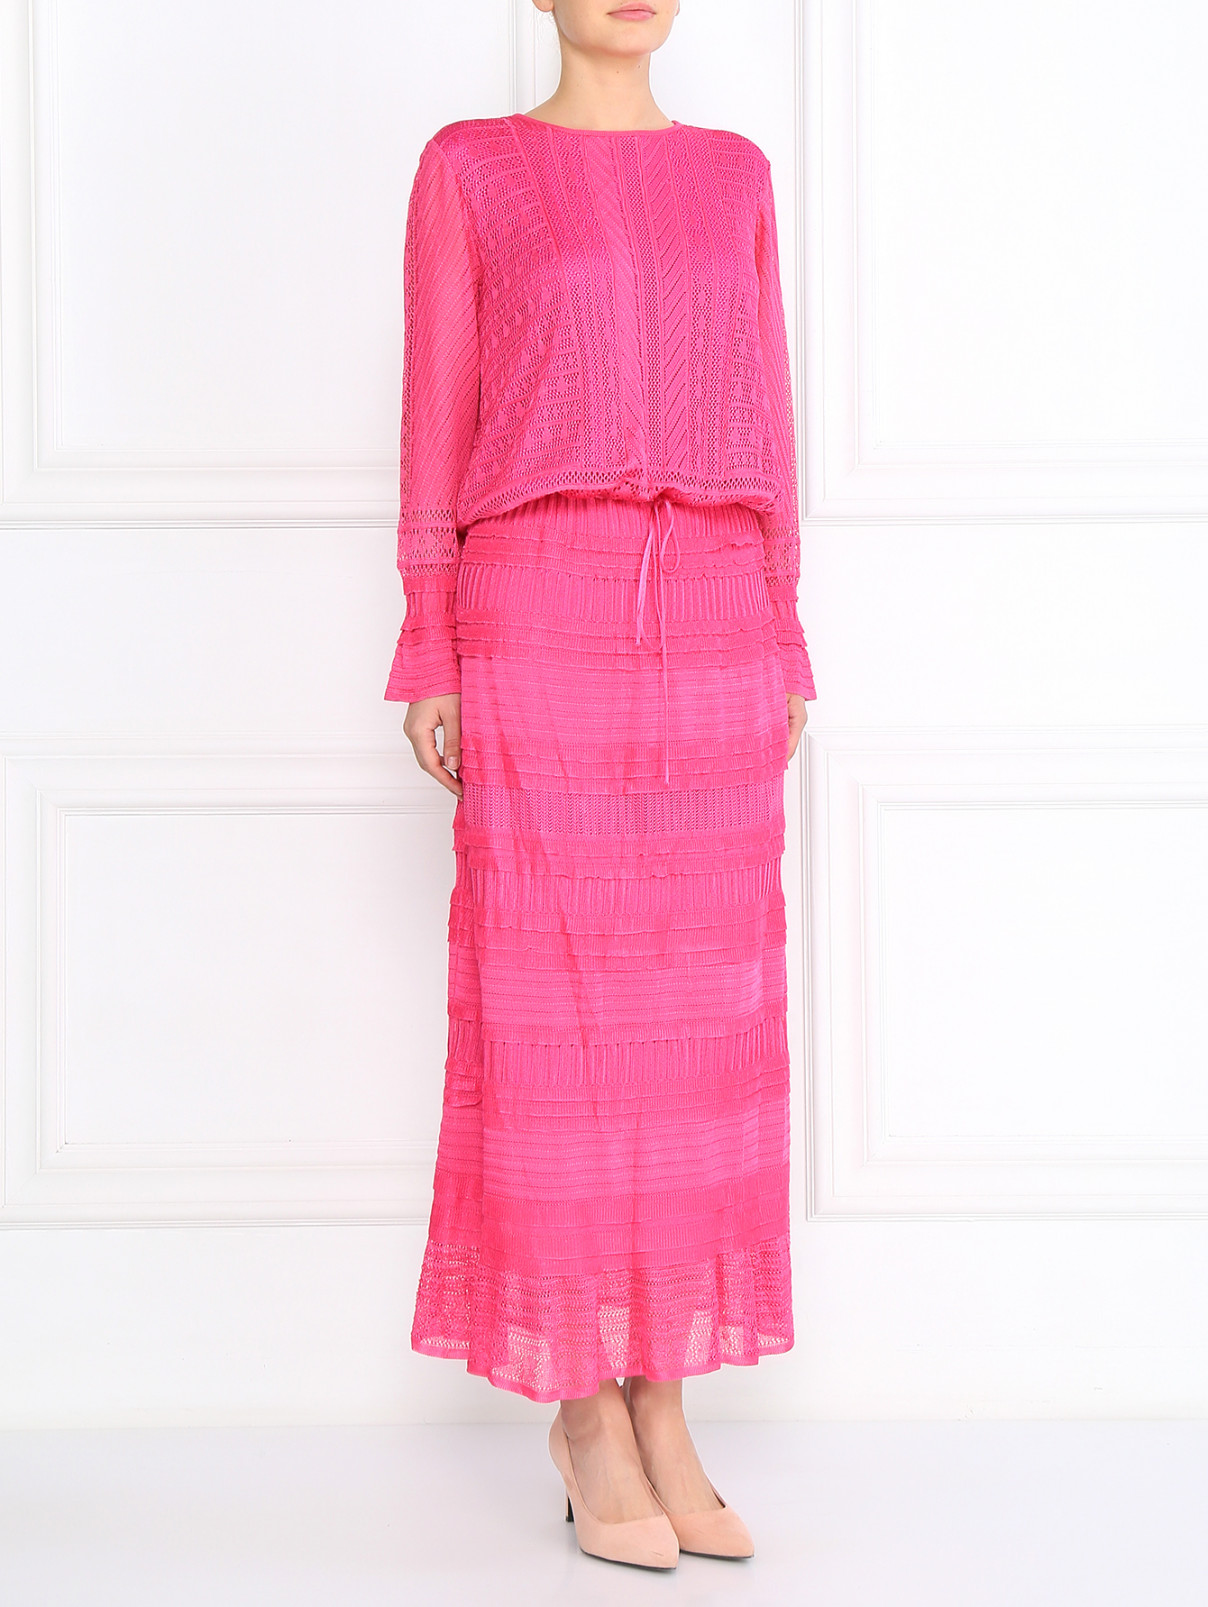 Платье-макси на кулиске Lil pour l'Autre  –  Модель Общий вид  – Цвет:  Фиолетовый